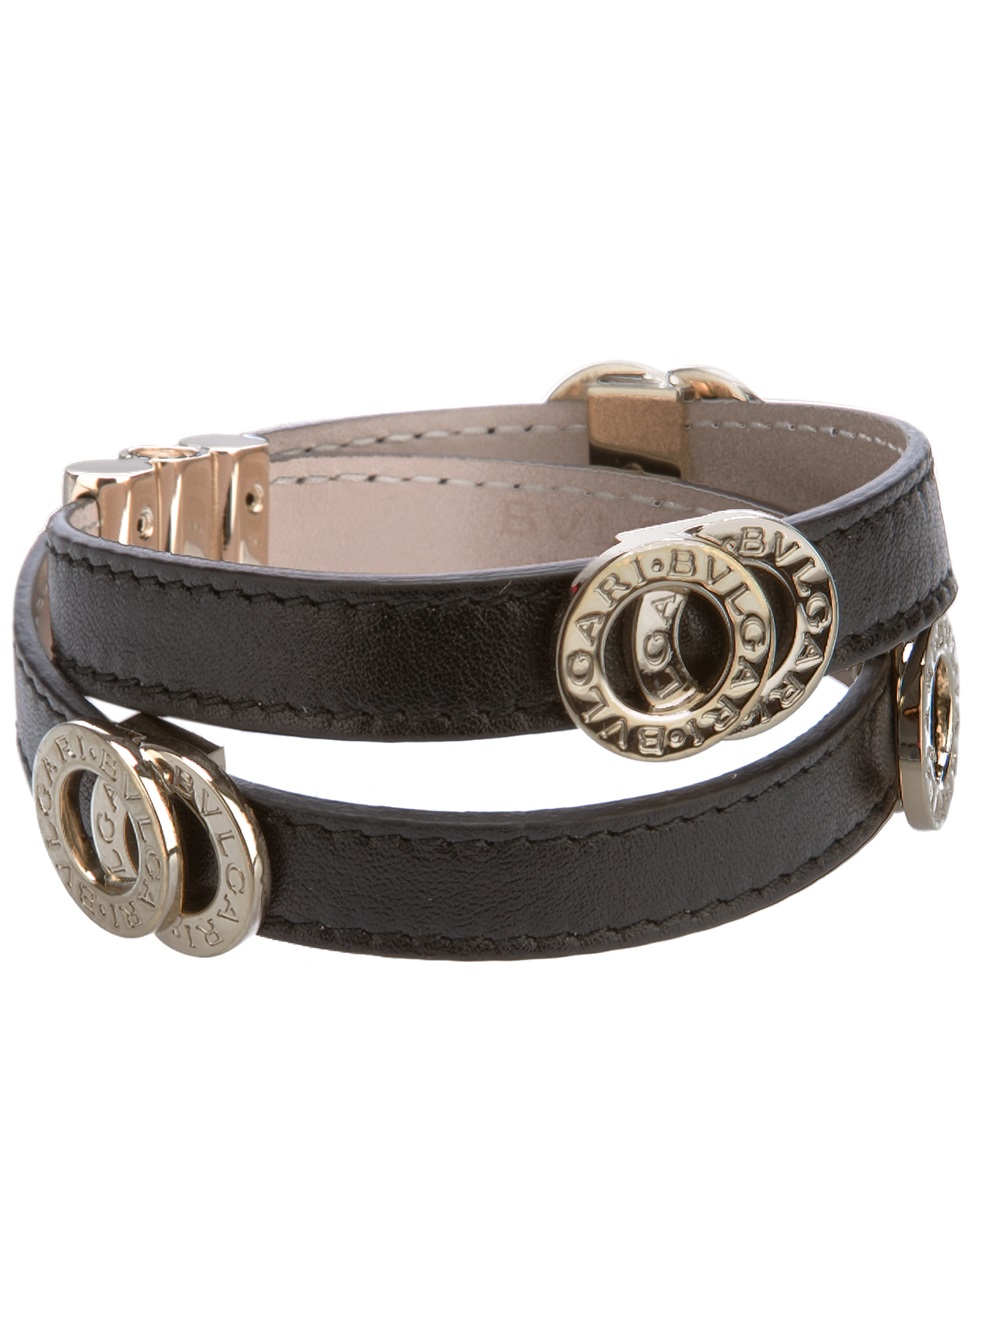 BVLGARI Leather Strap Bracelet in Black 